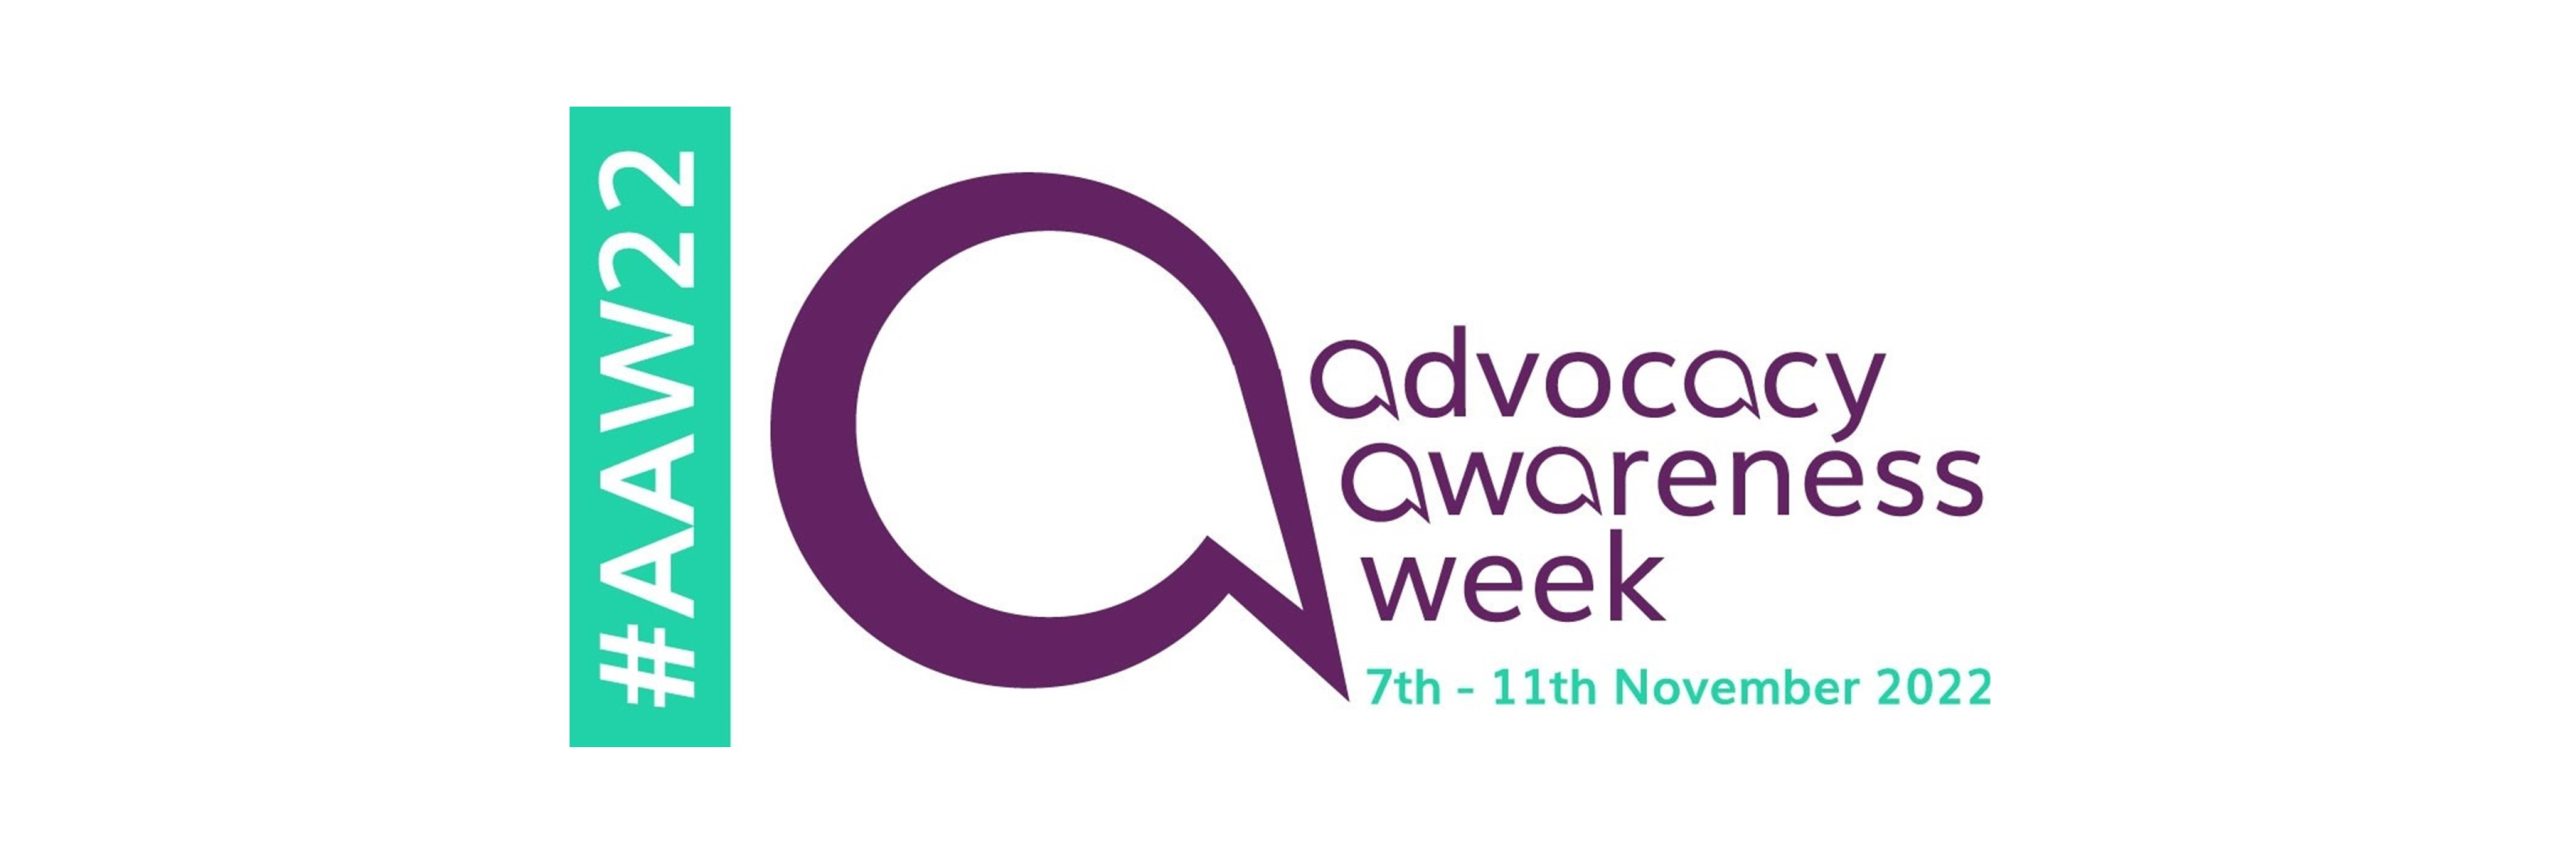 Advocacy Awareness Week 2022 - Logo